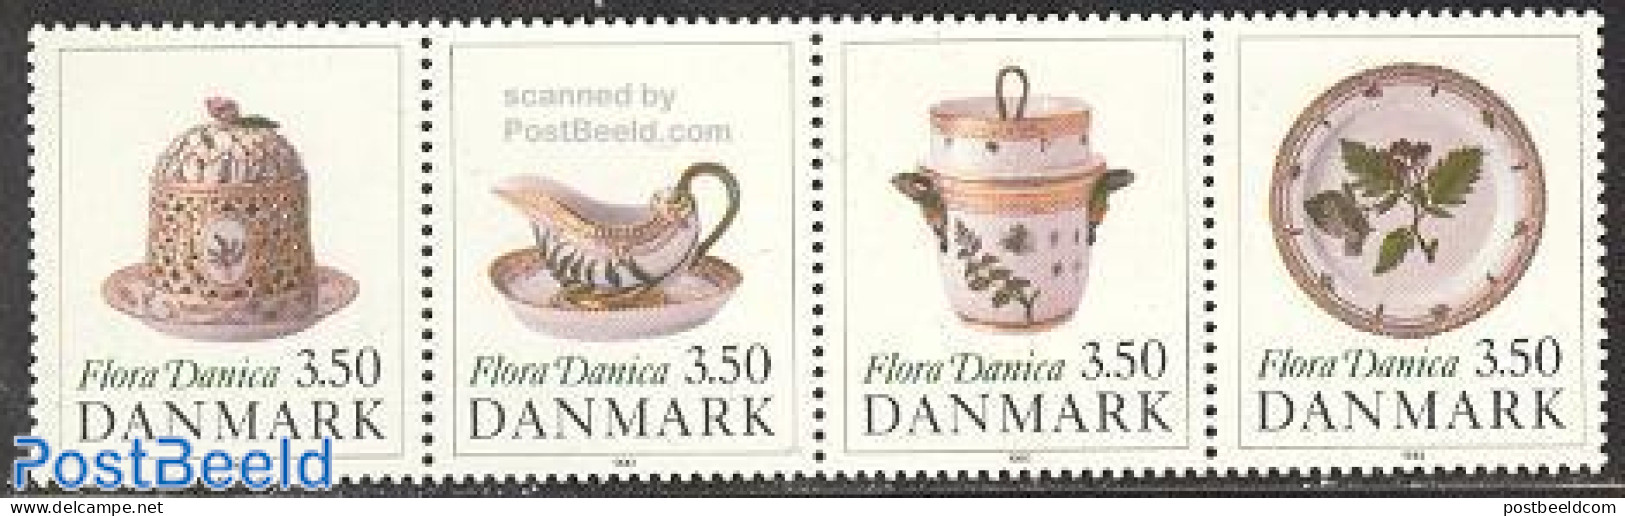 Denmark 1990 Porcelain 4v [:::], Mint NH, Art - Art & Antique Objects - Ceramics - Unused Stamps